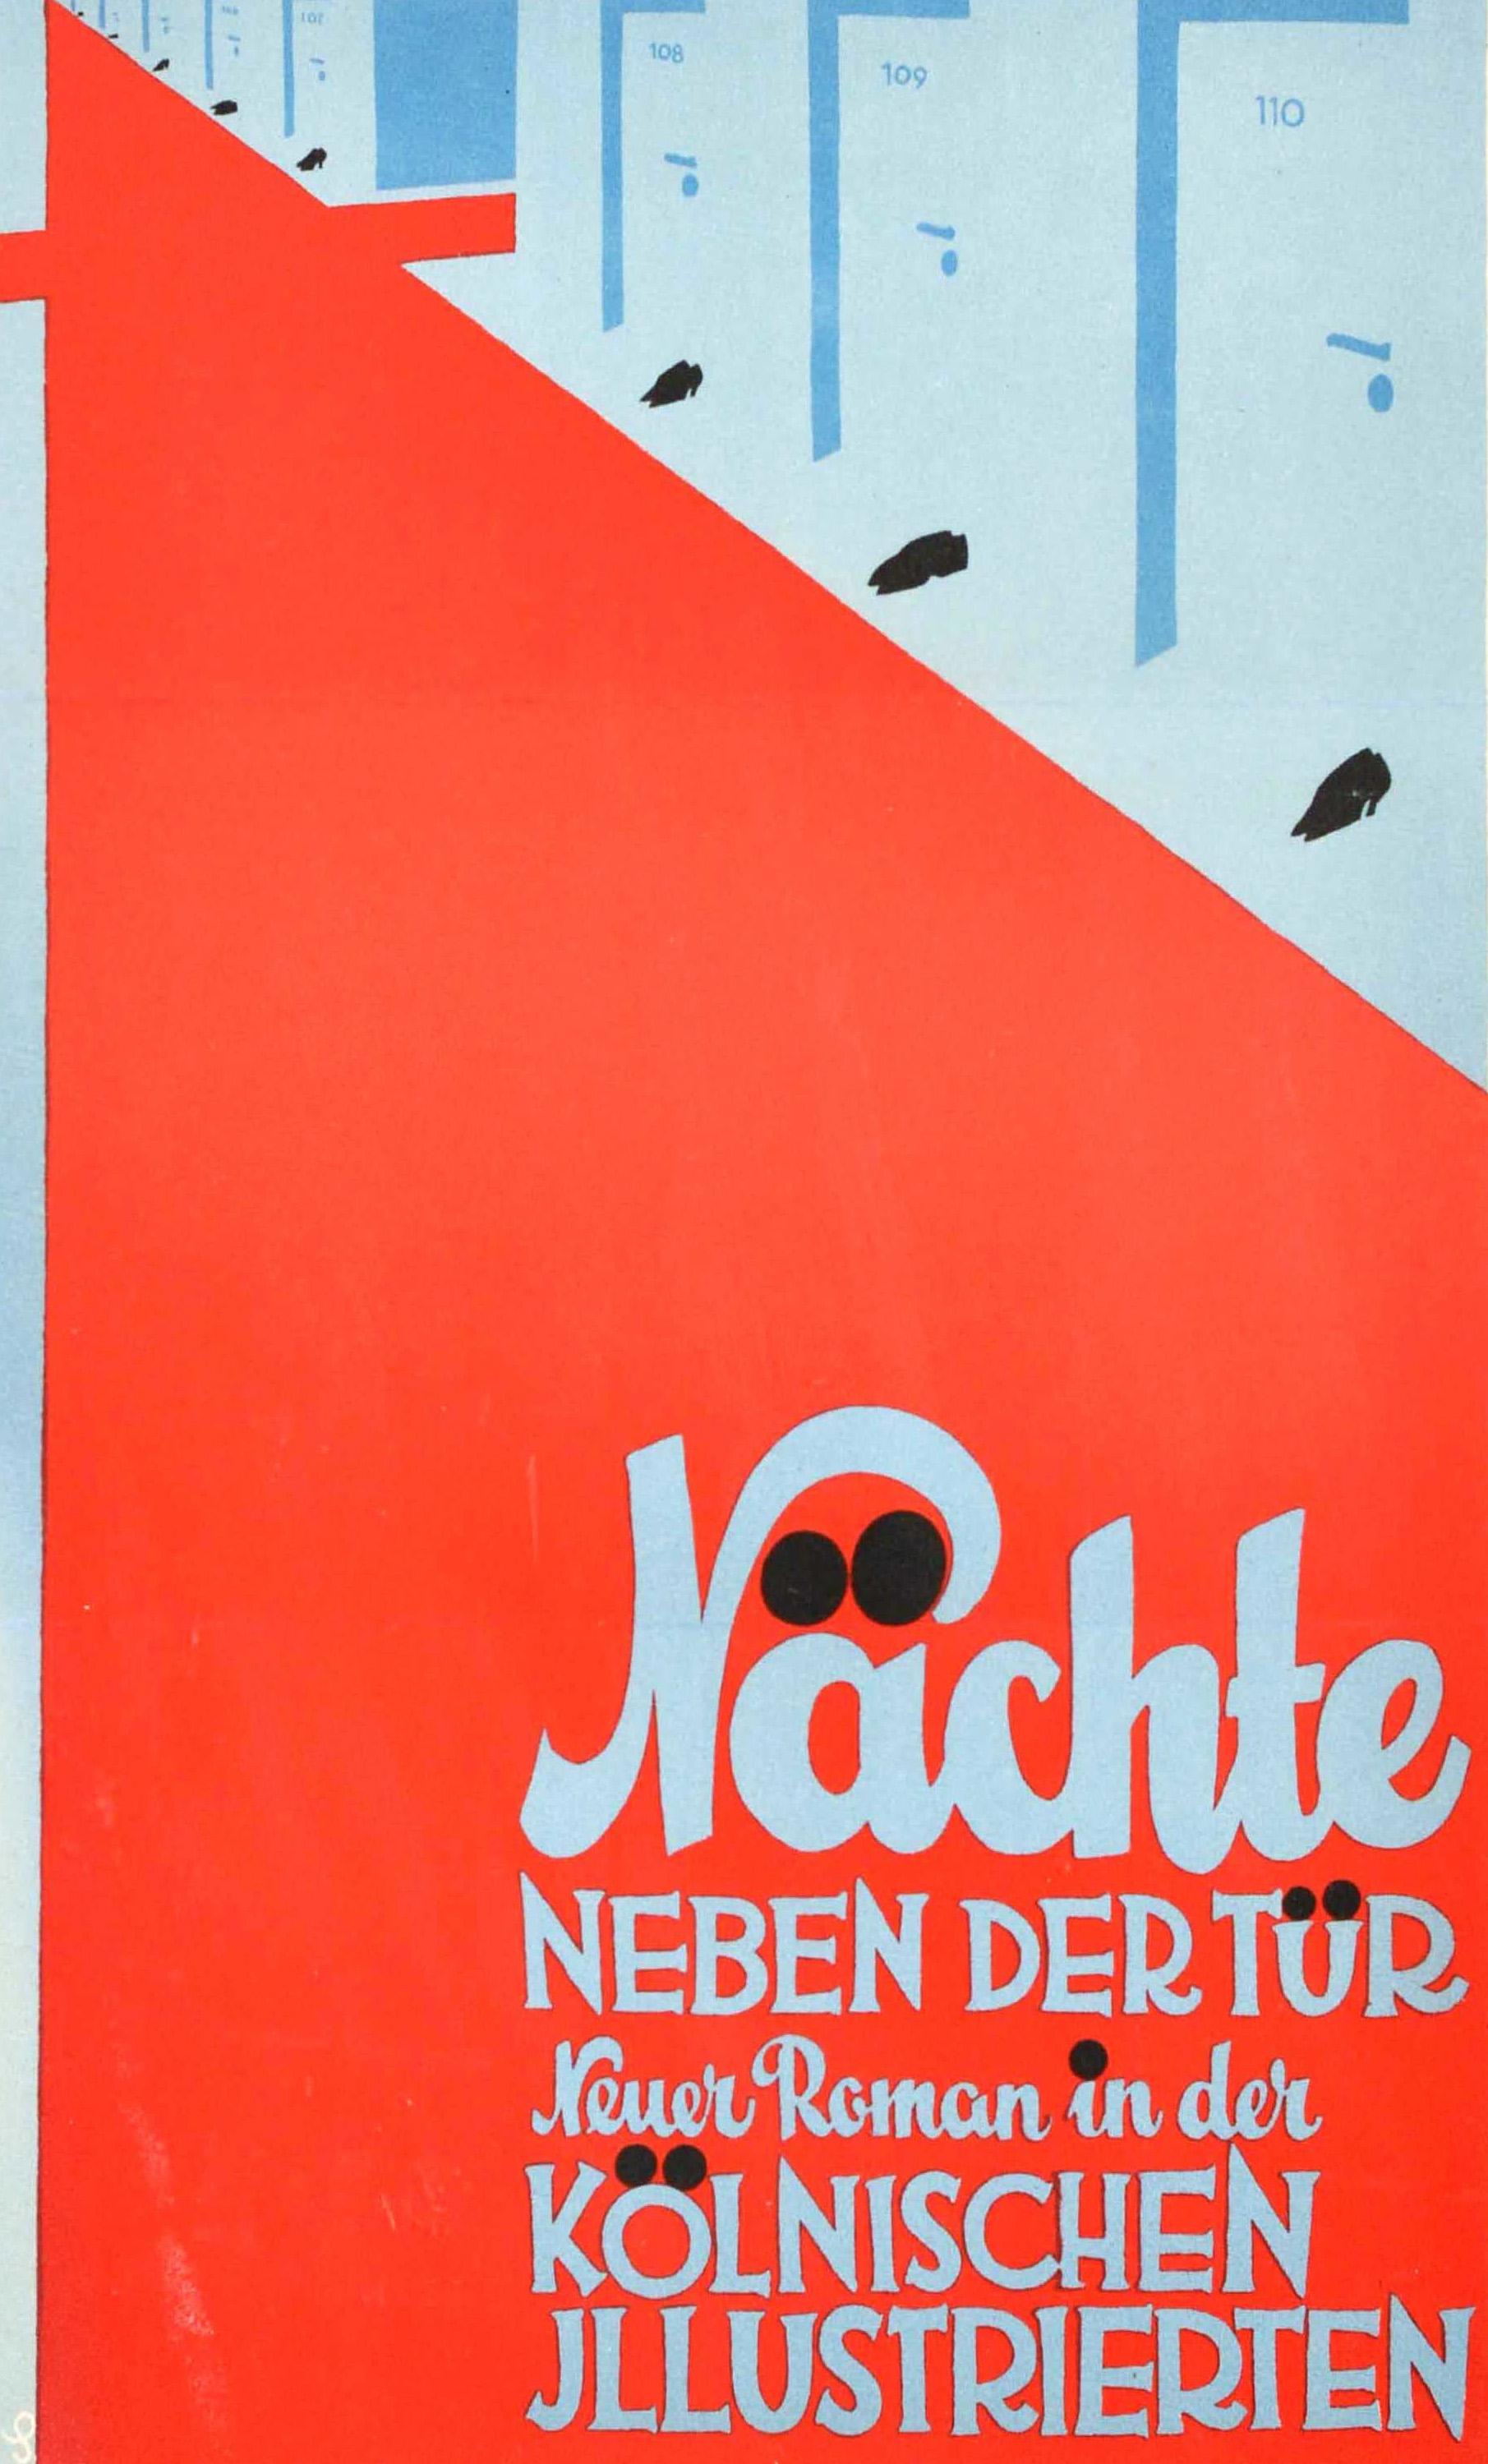 Original Vintage Advertising Poster Nachte Neben Der Tur Koln Illustrated Design - Print by Unknown